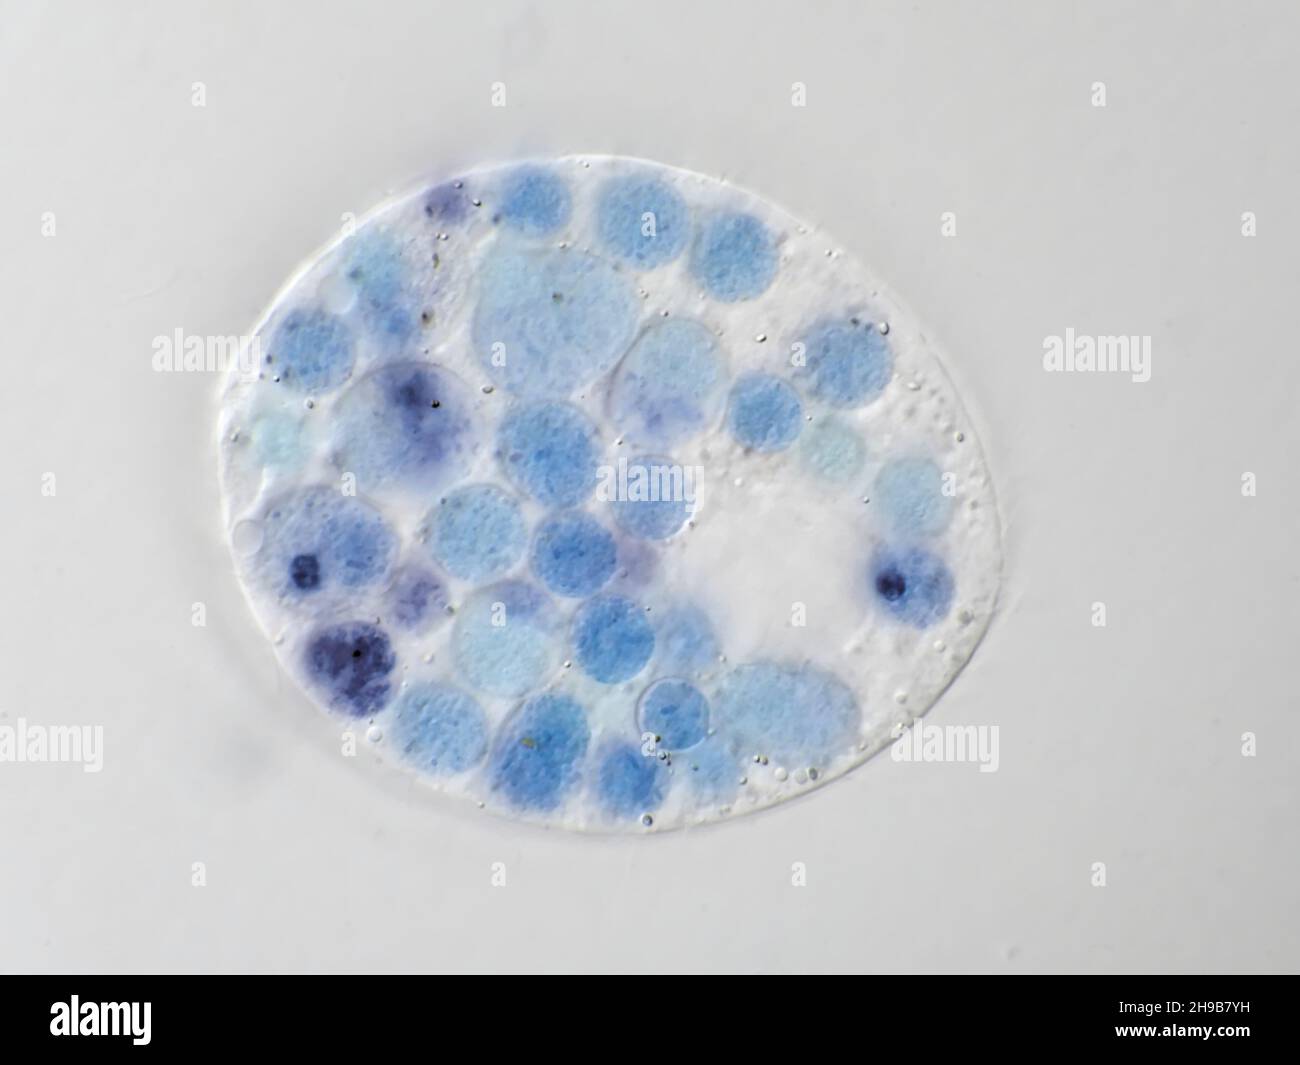 Microbe protiste d'un échantillon d'eau, avec des vacuoles alimentaires visibles colorées en bleu, image de microscopie avec champ de vision horizontal d'environ 121 micromètres Banque D'Images